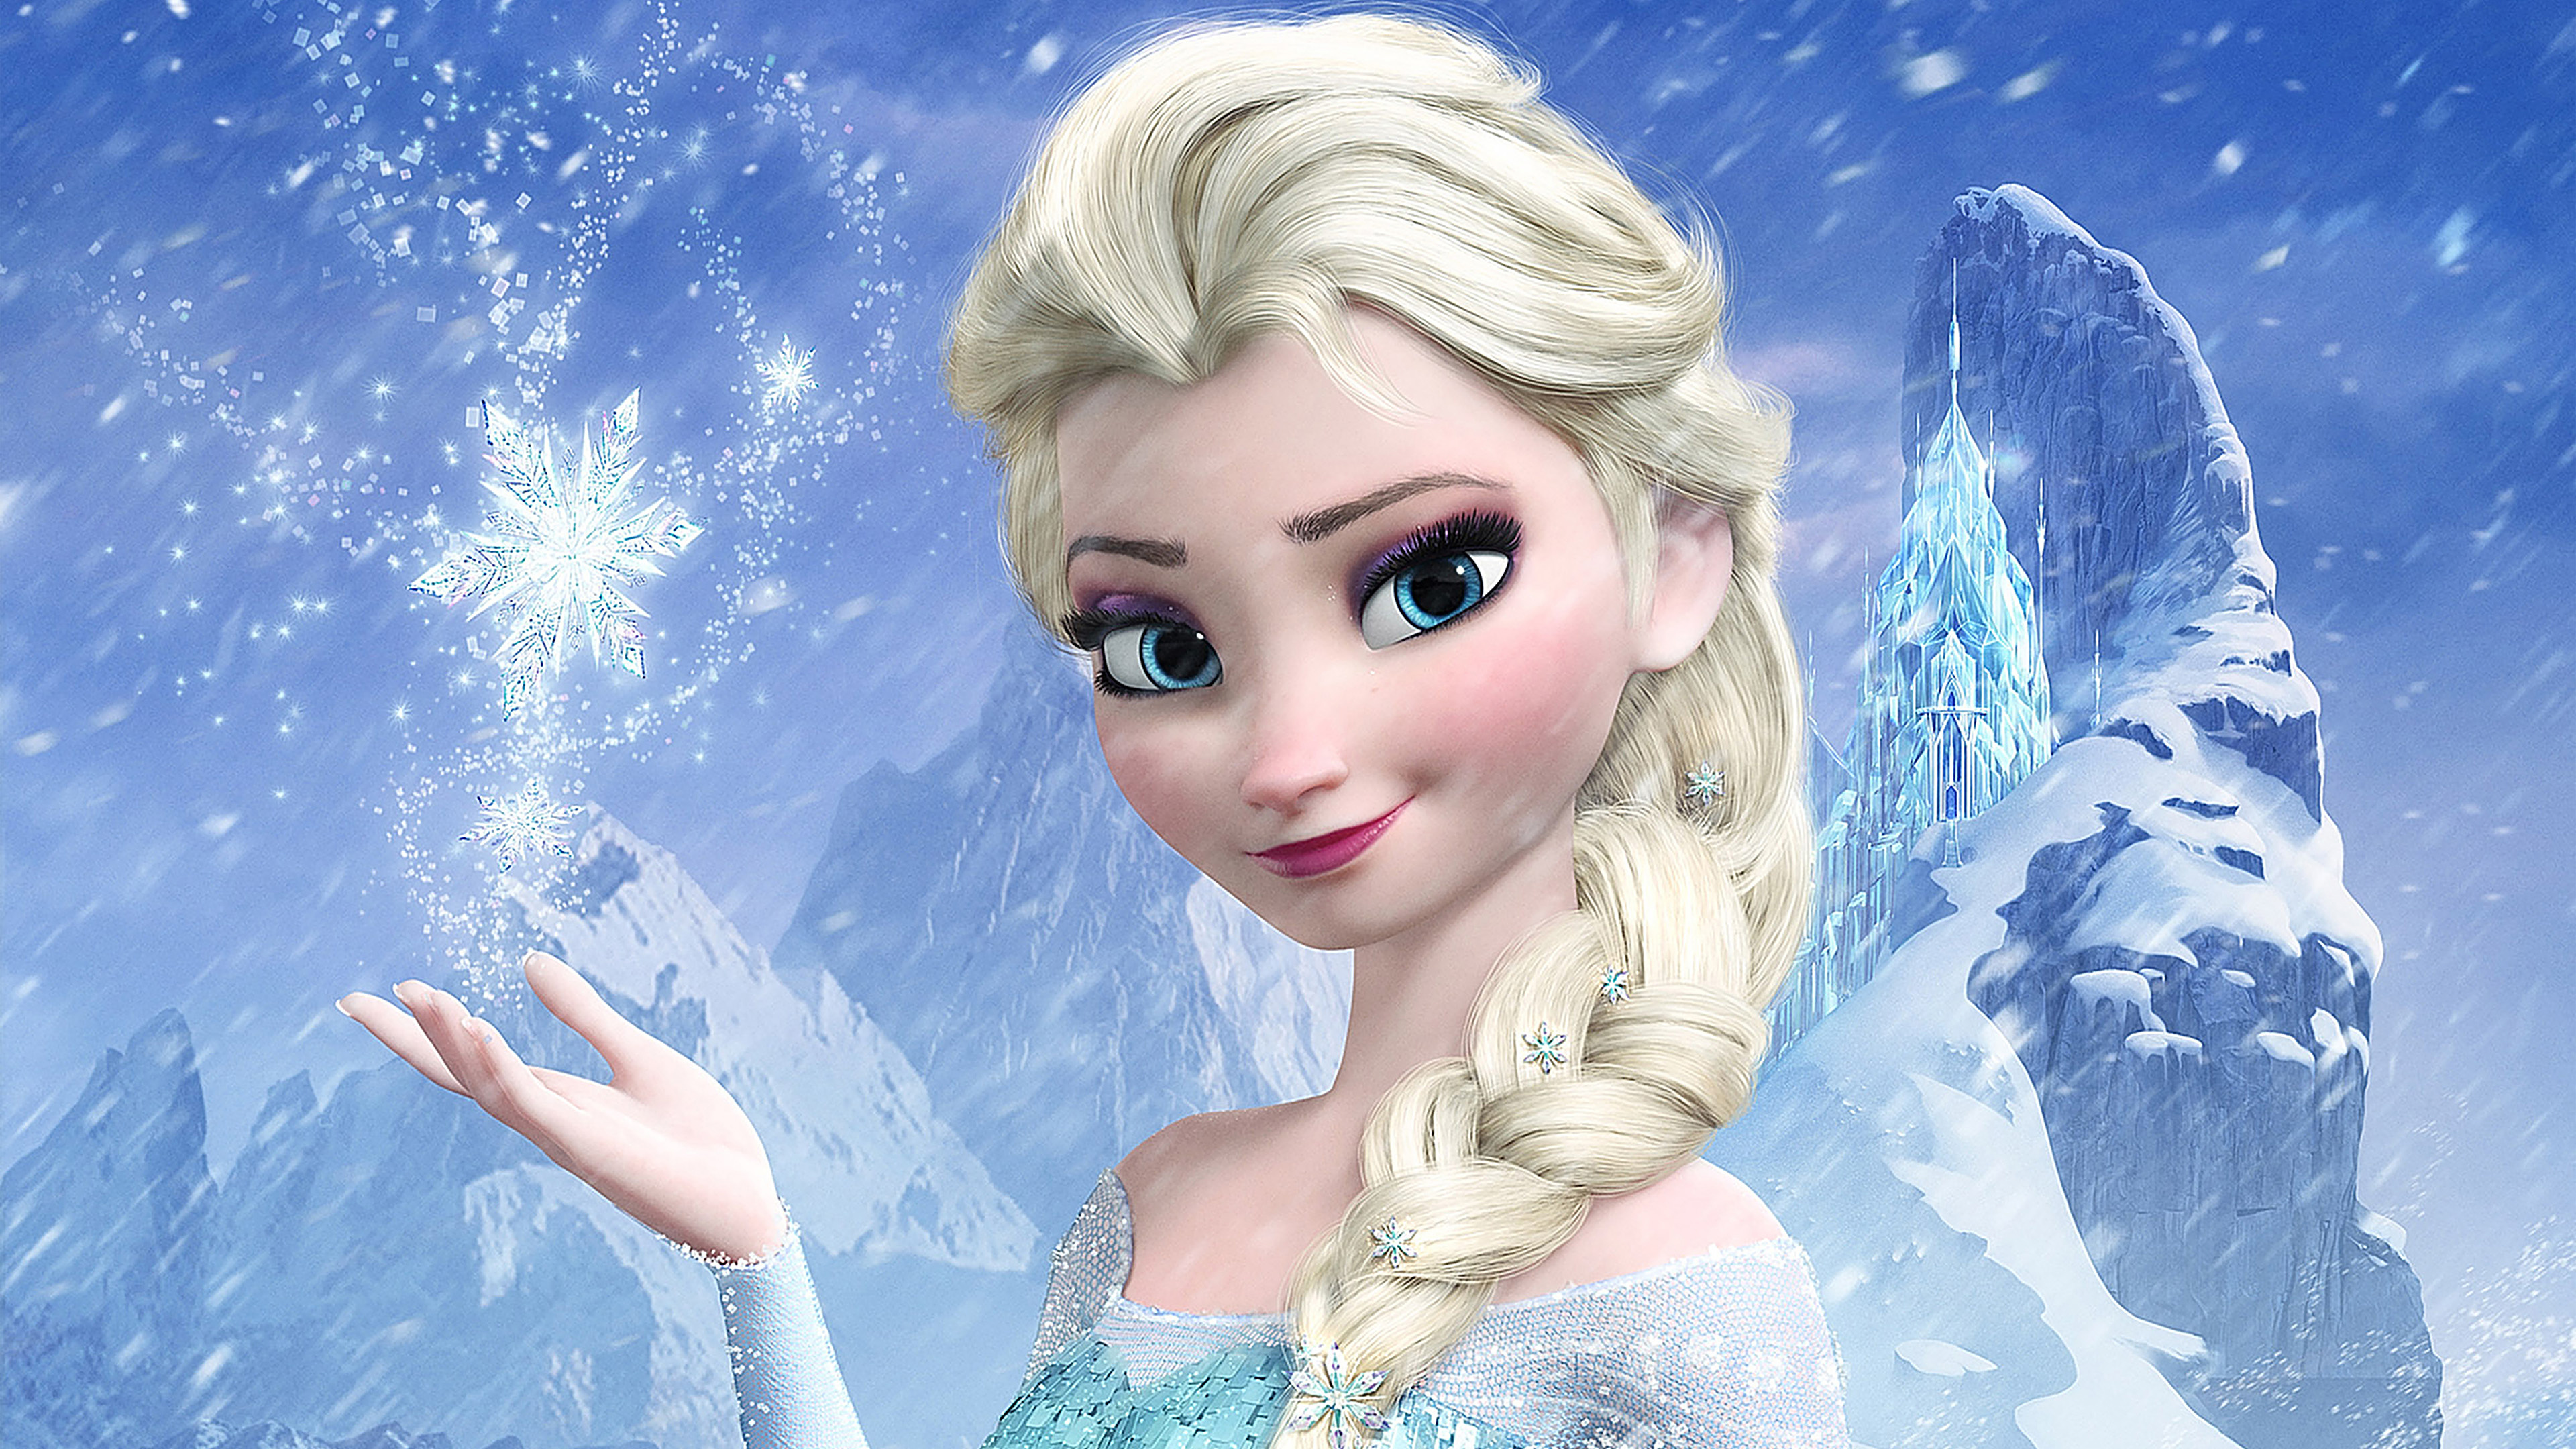 Elsa frozen queen, Disney art, Animation, Film, 3840x2160 4K Desktop